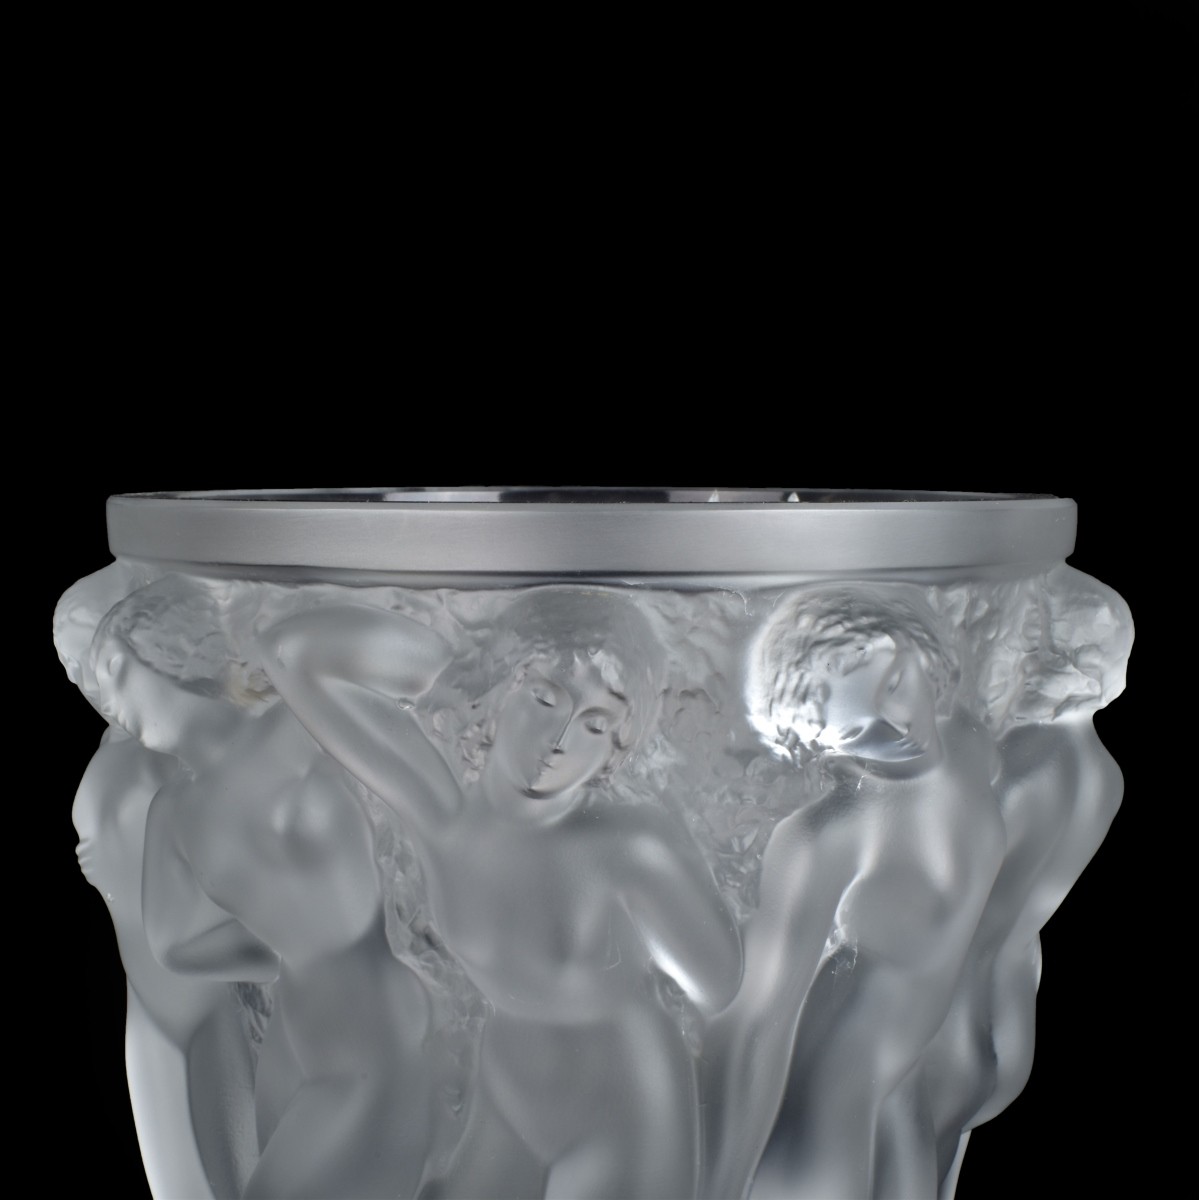 Lalique "Bacchantes" Crystal Vase